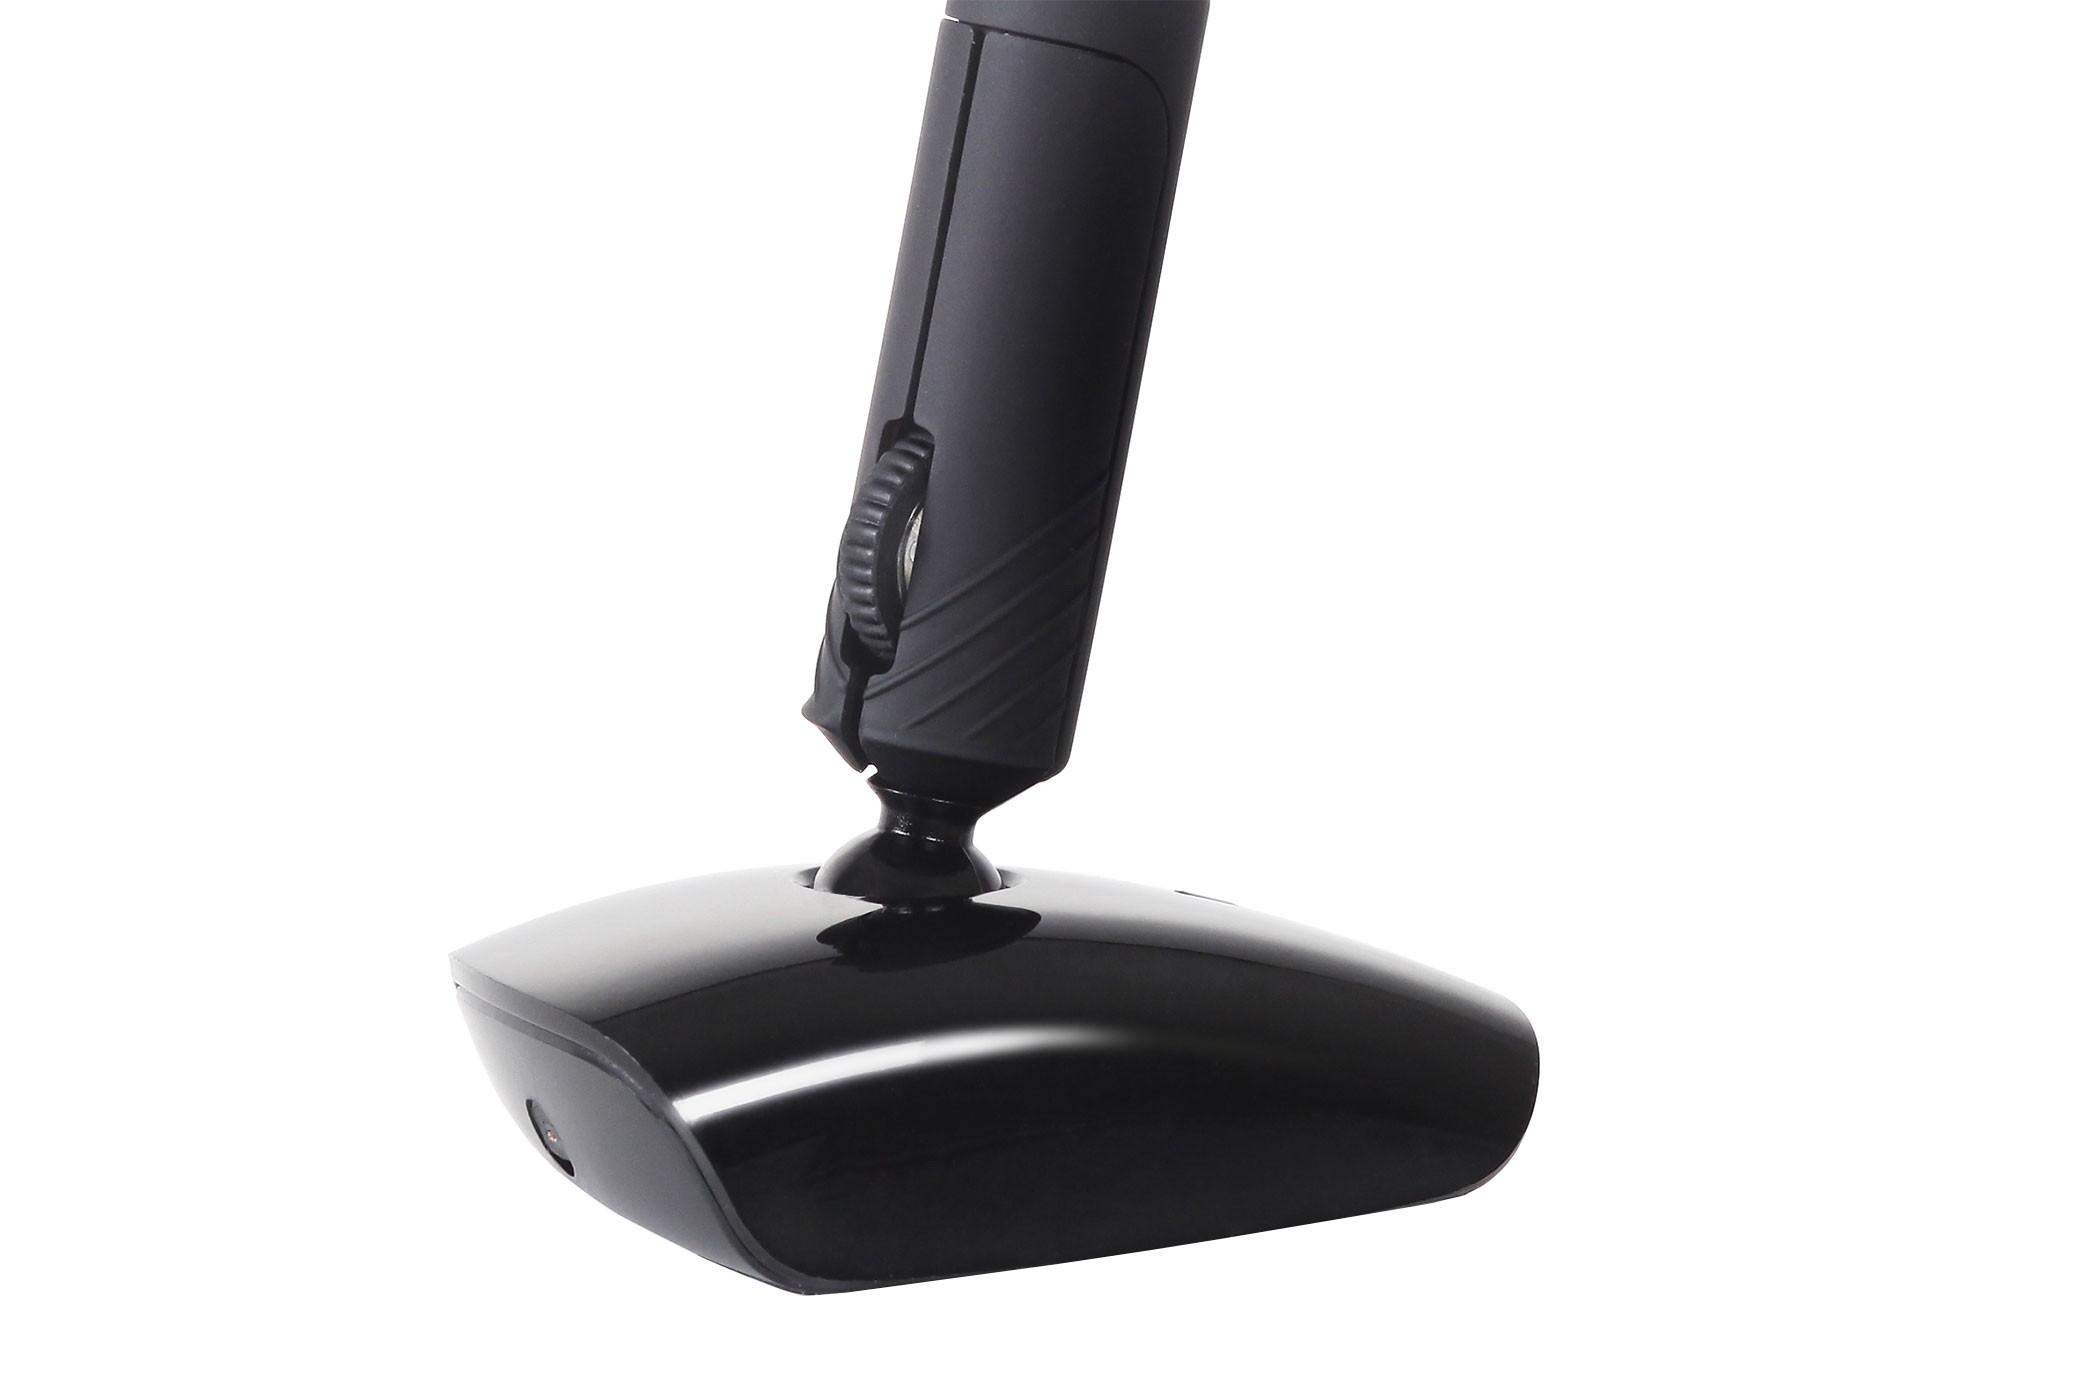 Souris ergonomique de précision Penclic Mouse Wireless - 2